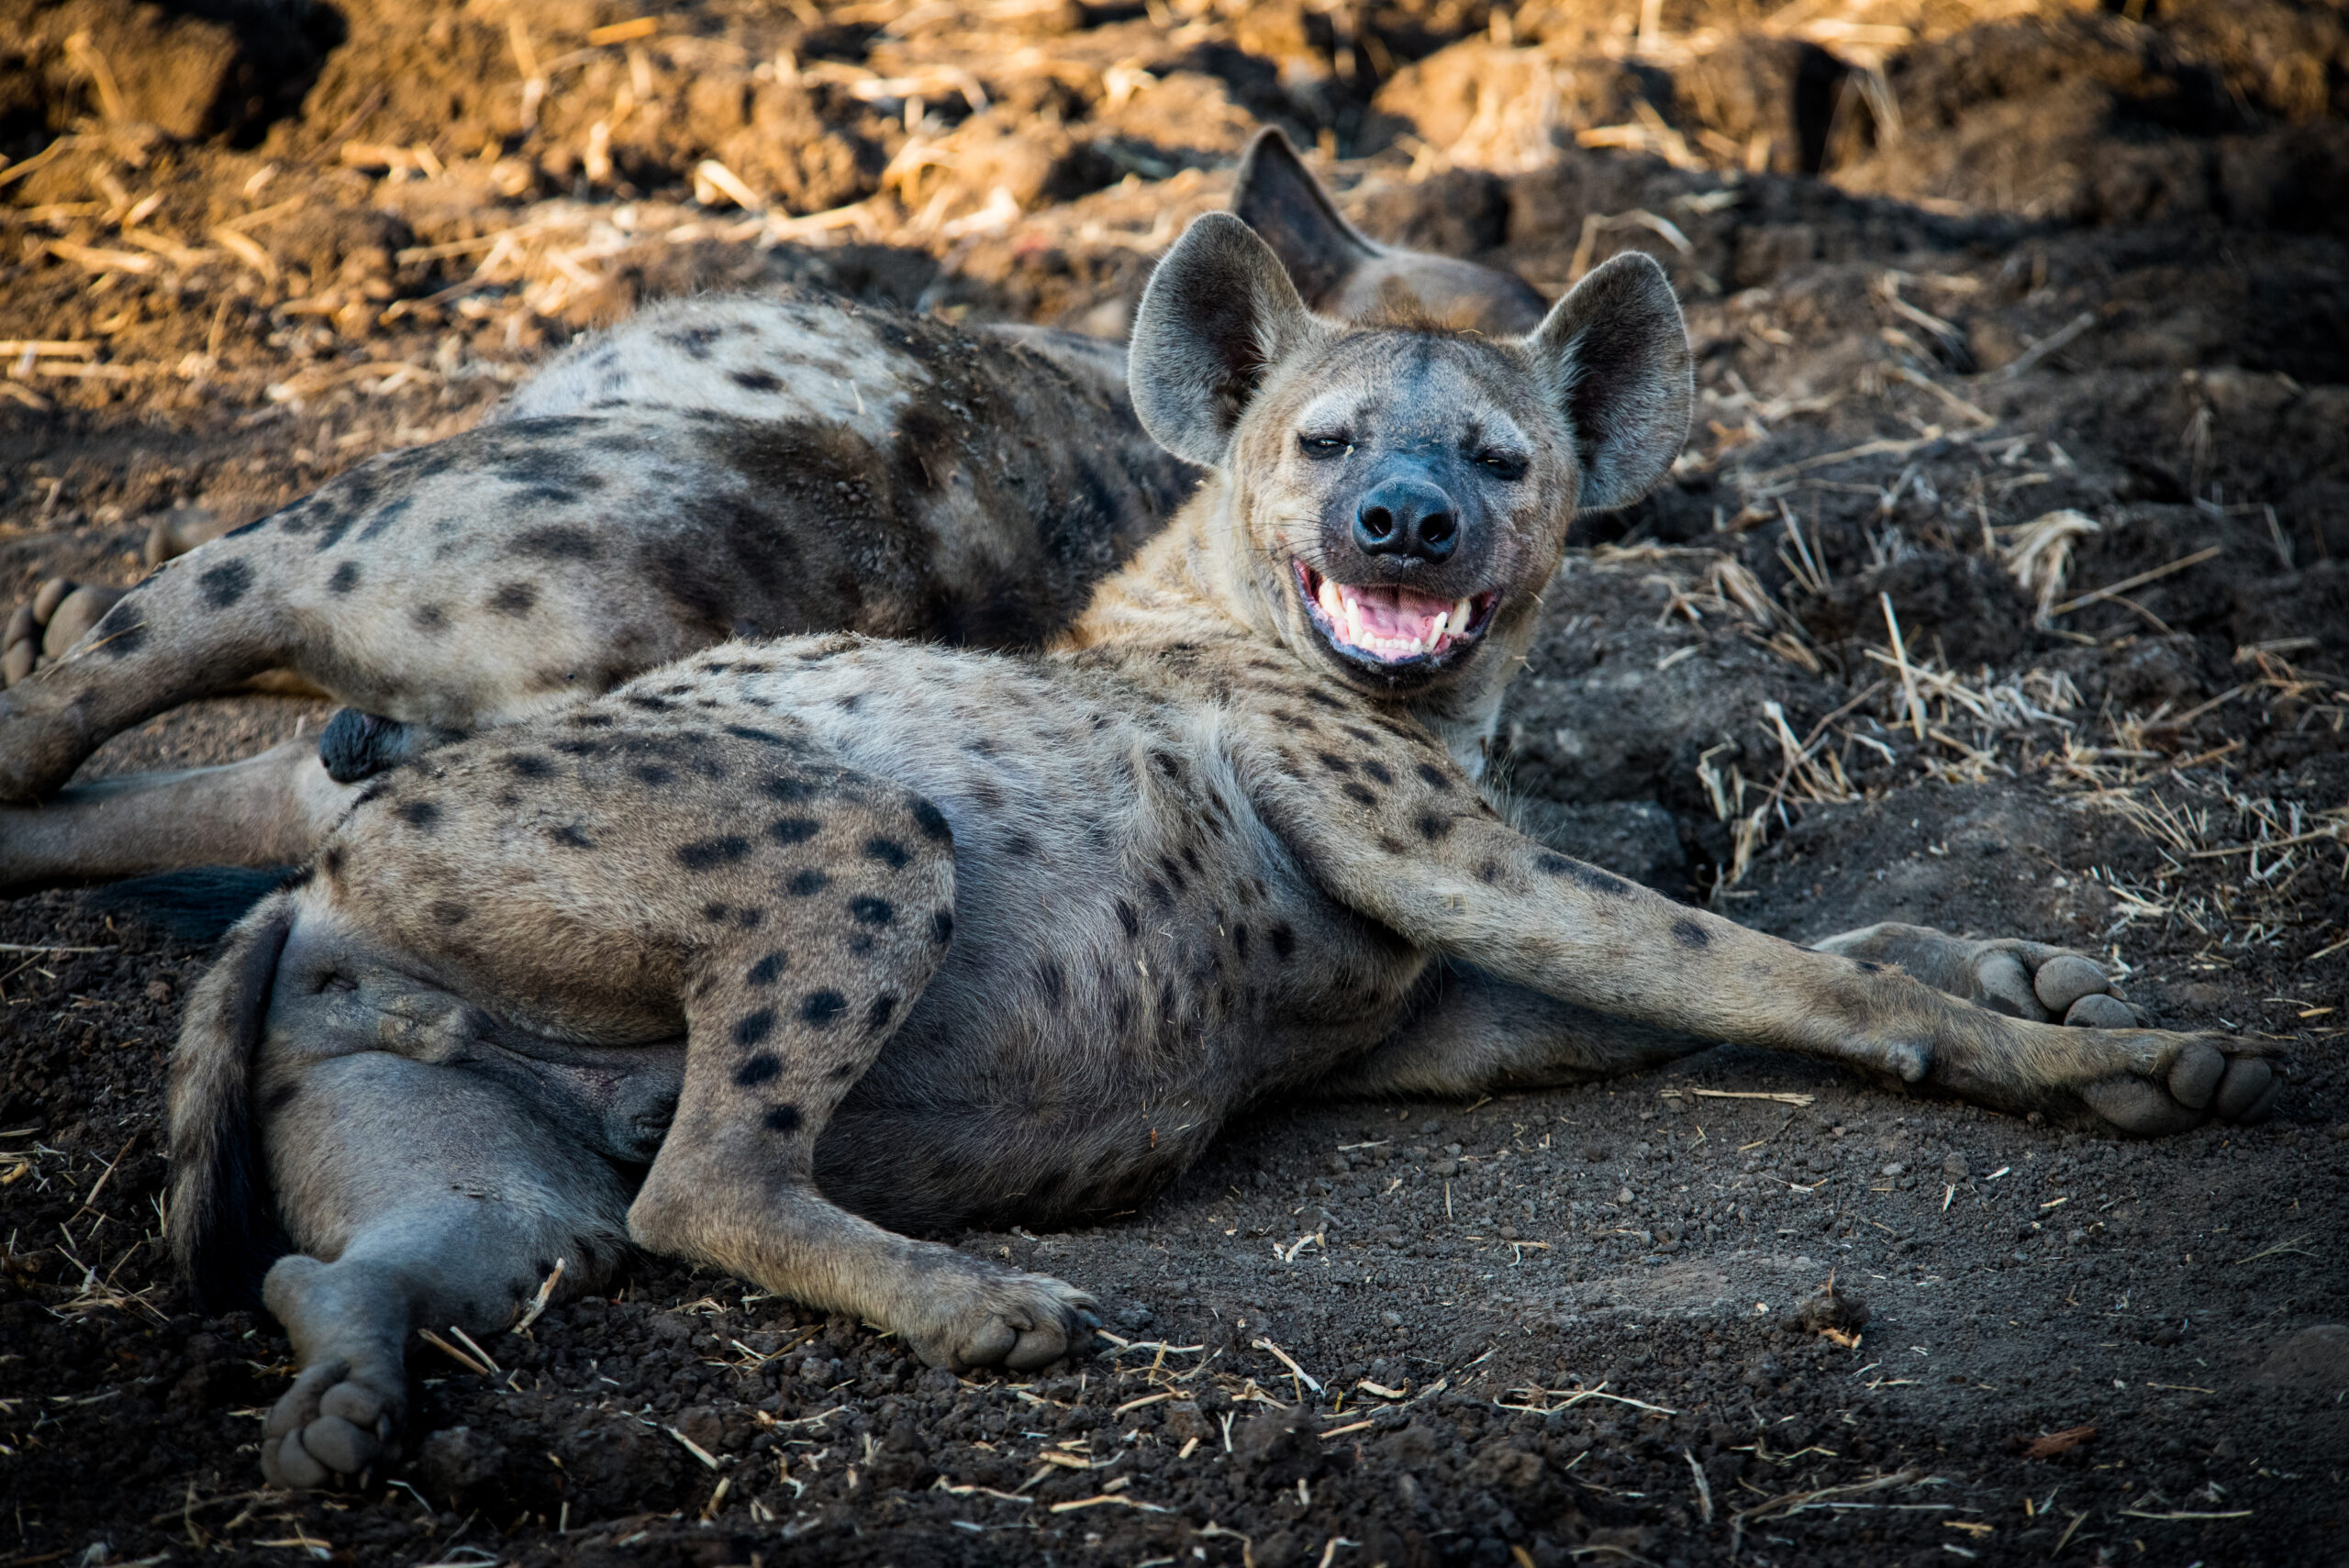 Spot Hyenas at Nokanyana